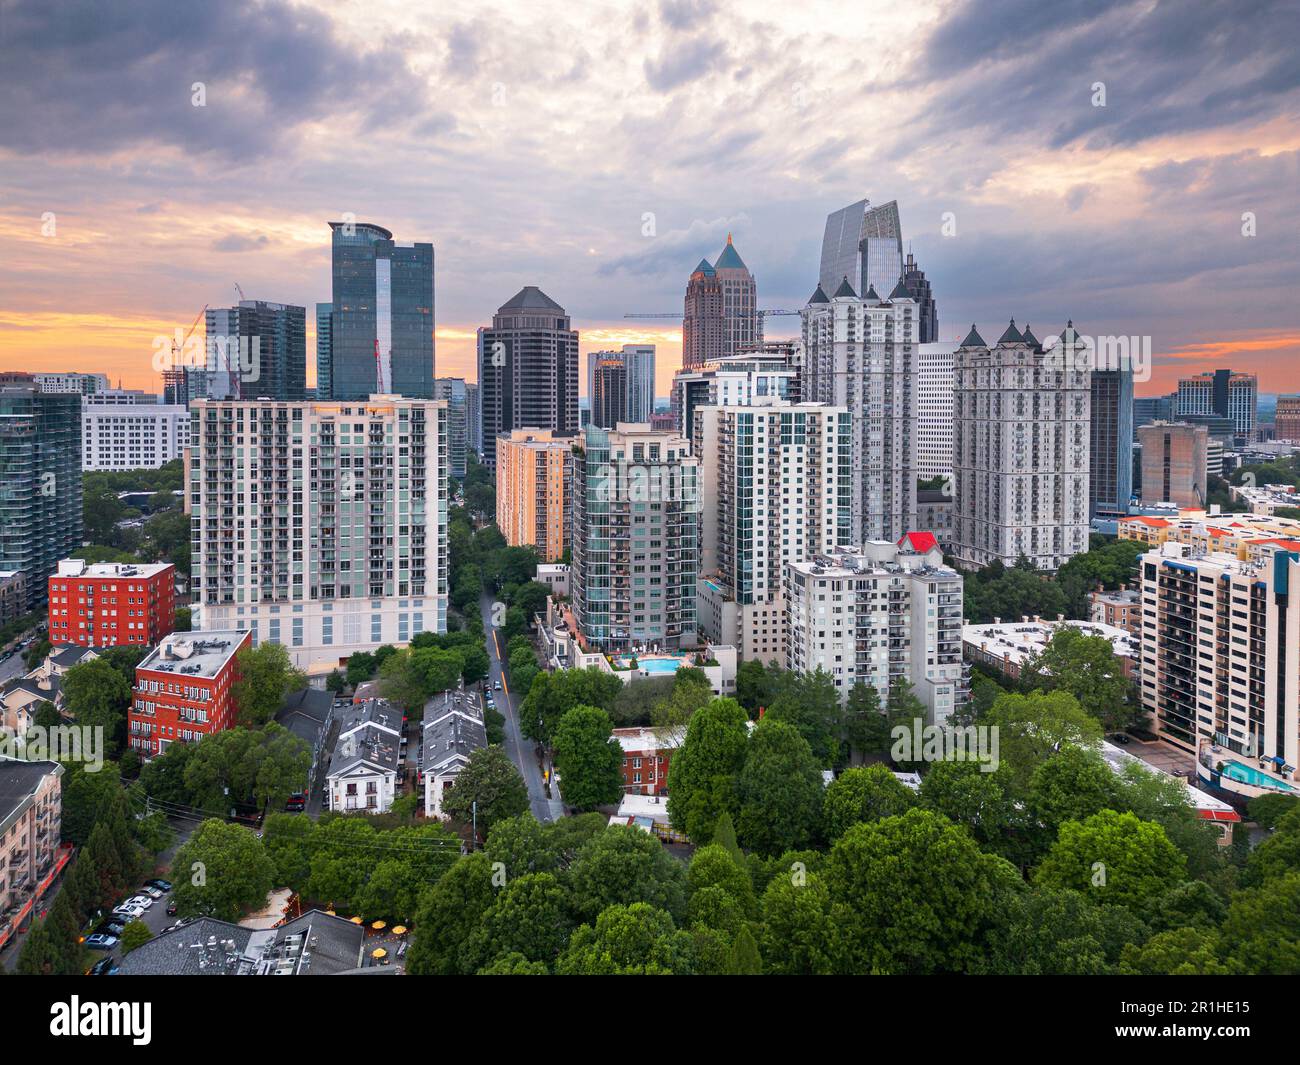 Atlanta, Georgia, USA cityscape from above at dusk. Stock Photo